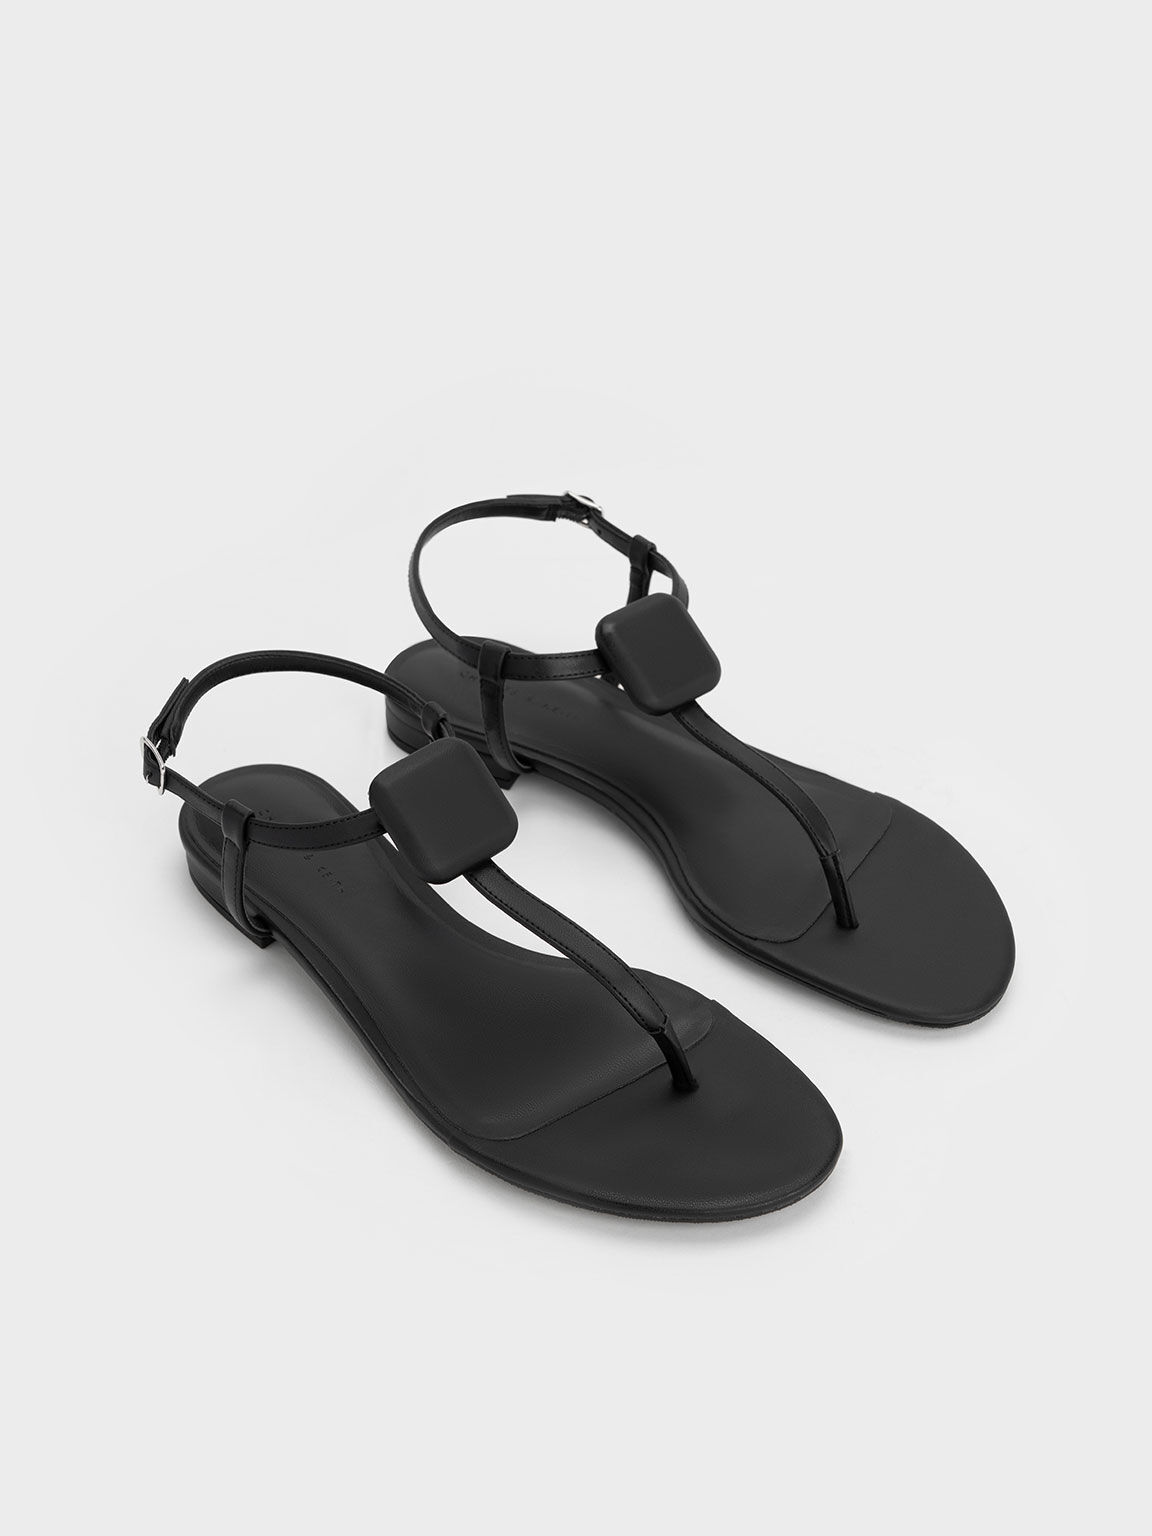 Koa Thong Sandals, Black, hi-res